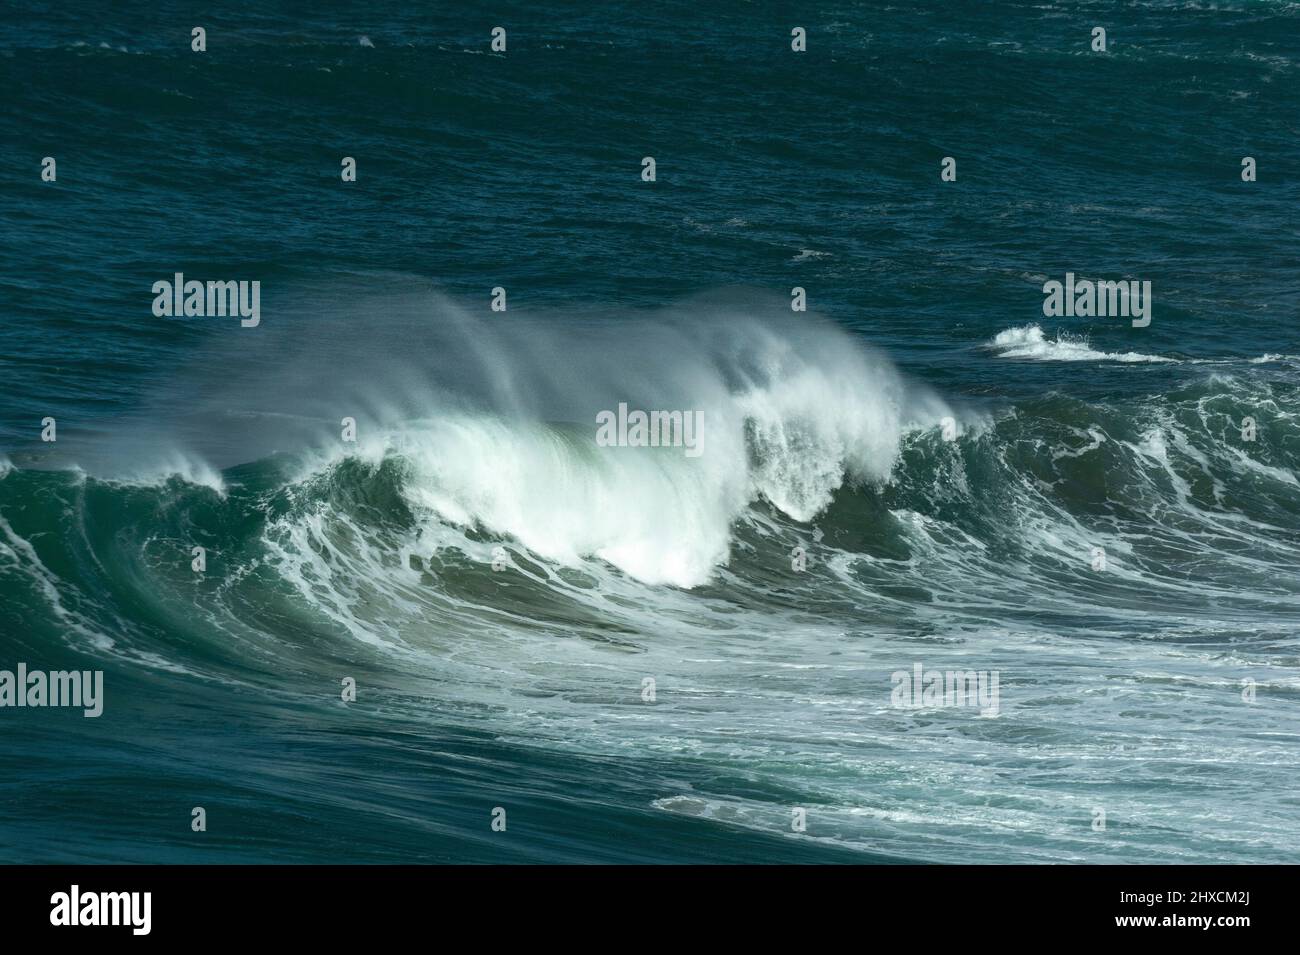 Una grande onda si spezza sulle rive dell'Oceano Pacifico, Monterey, California, USA Foto Stock